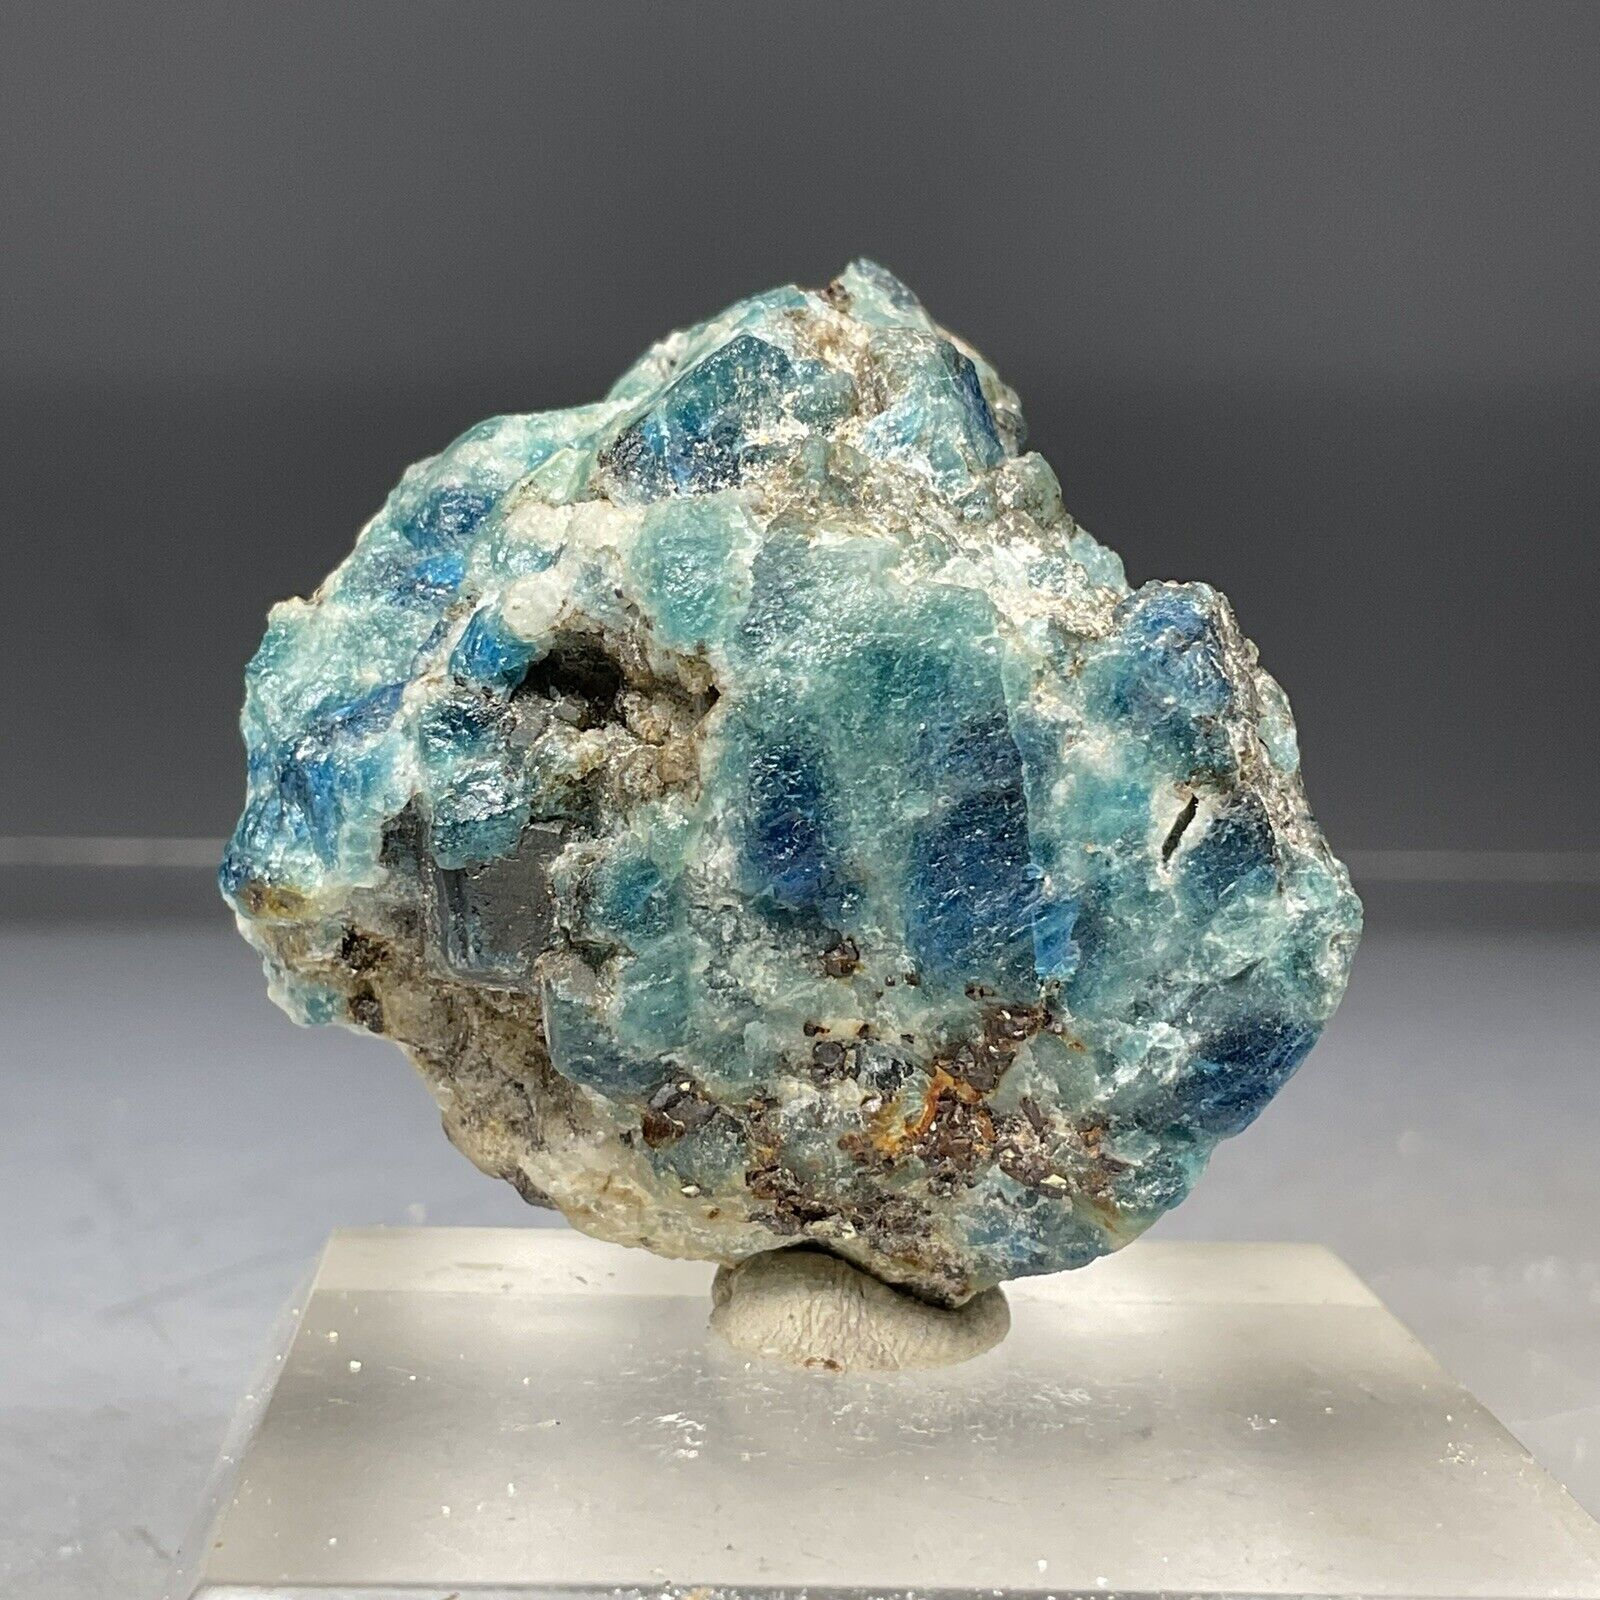 SS Rocks - Sodalite with Quartz (Sar-e-Sang, Afghanistan) 41g